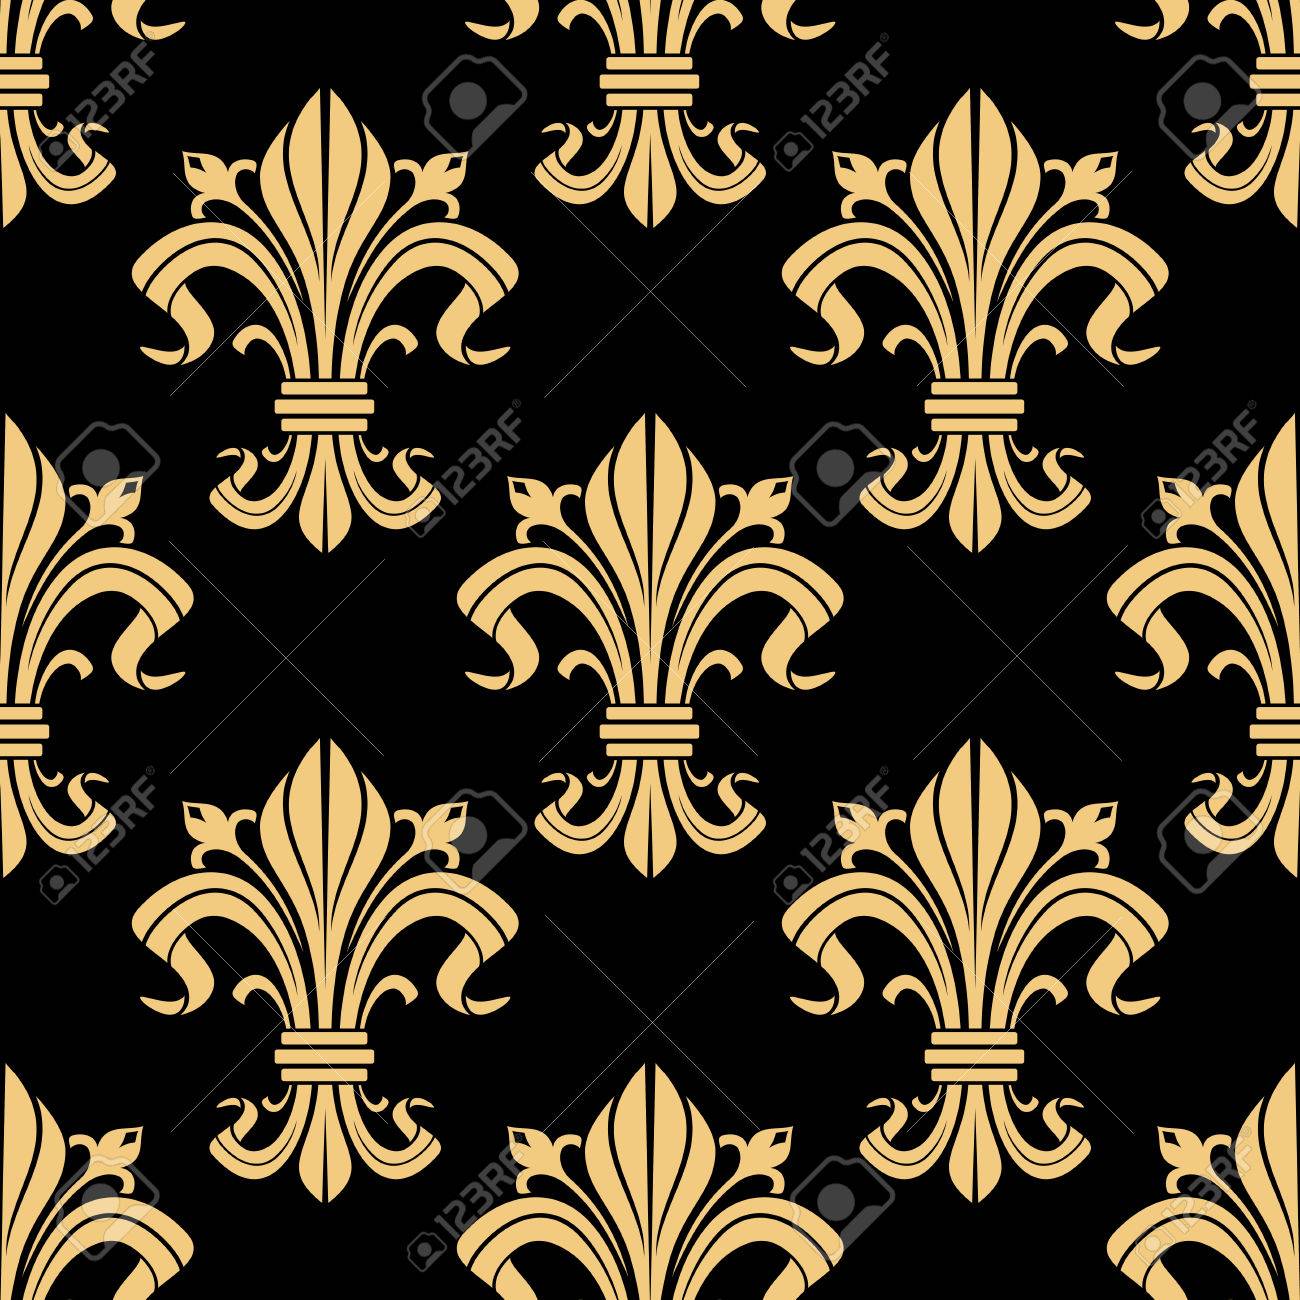 Medieval Royal Golden Fleur De Lis Pattern On Black Background